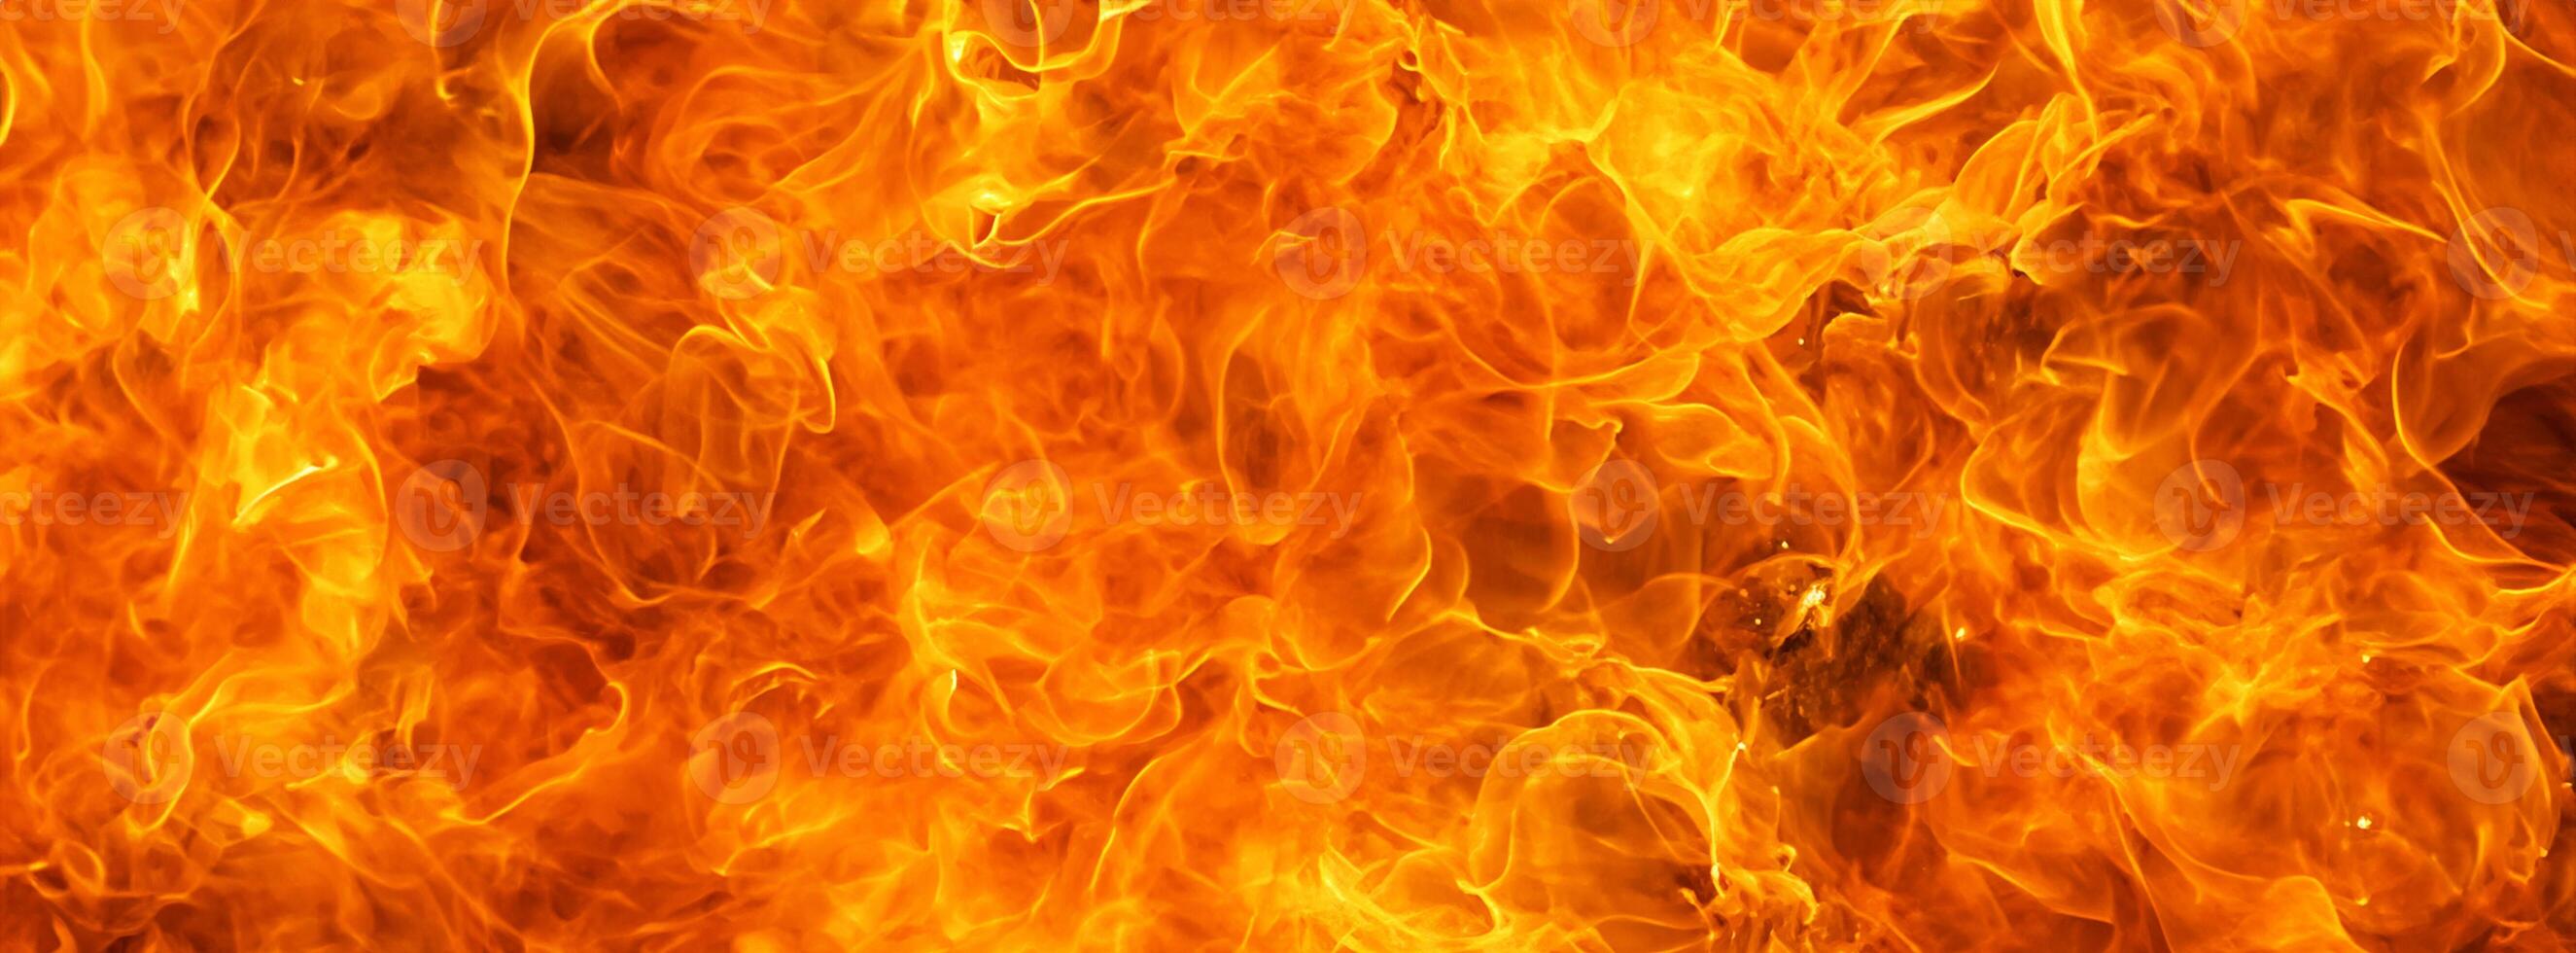 bläs brand flamma brand textur för baner bakgrund foto